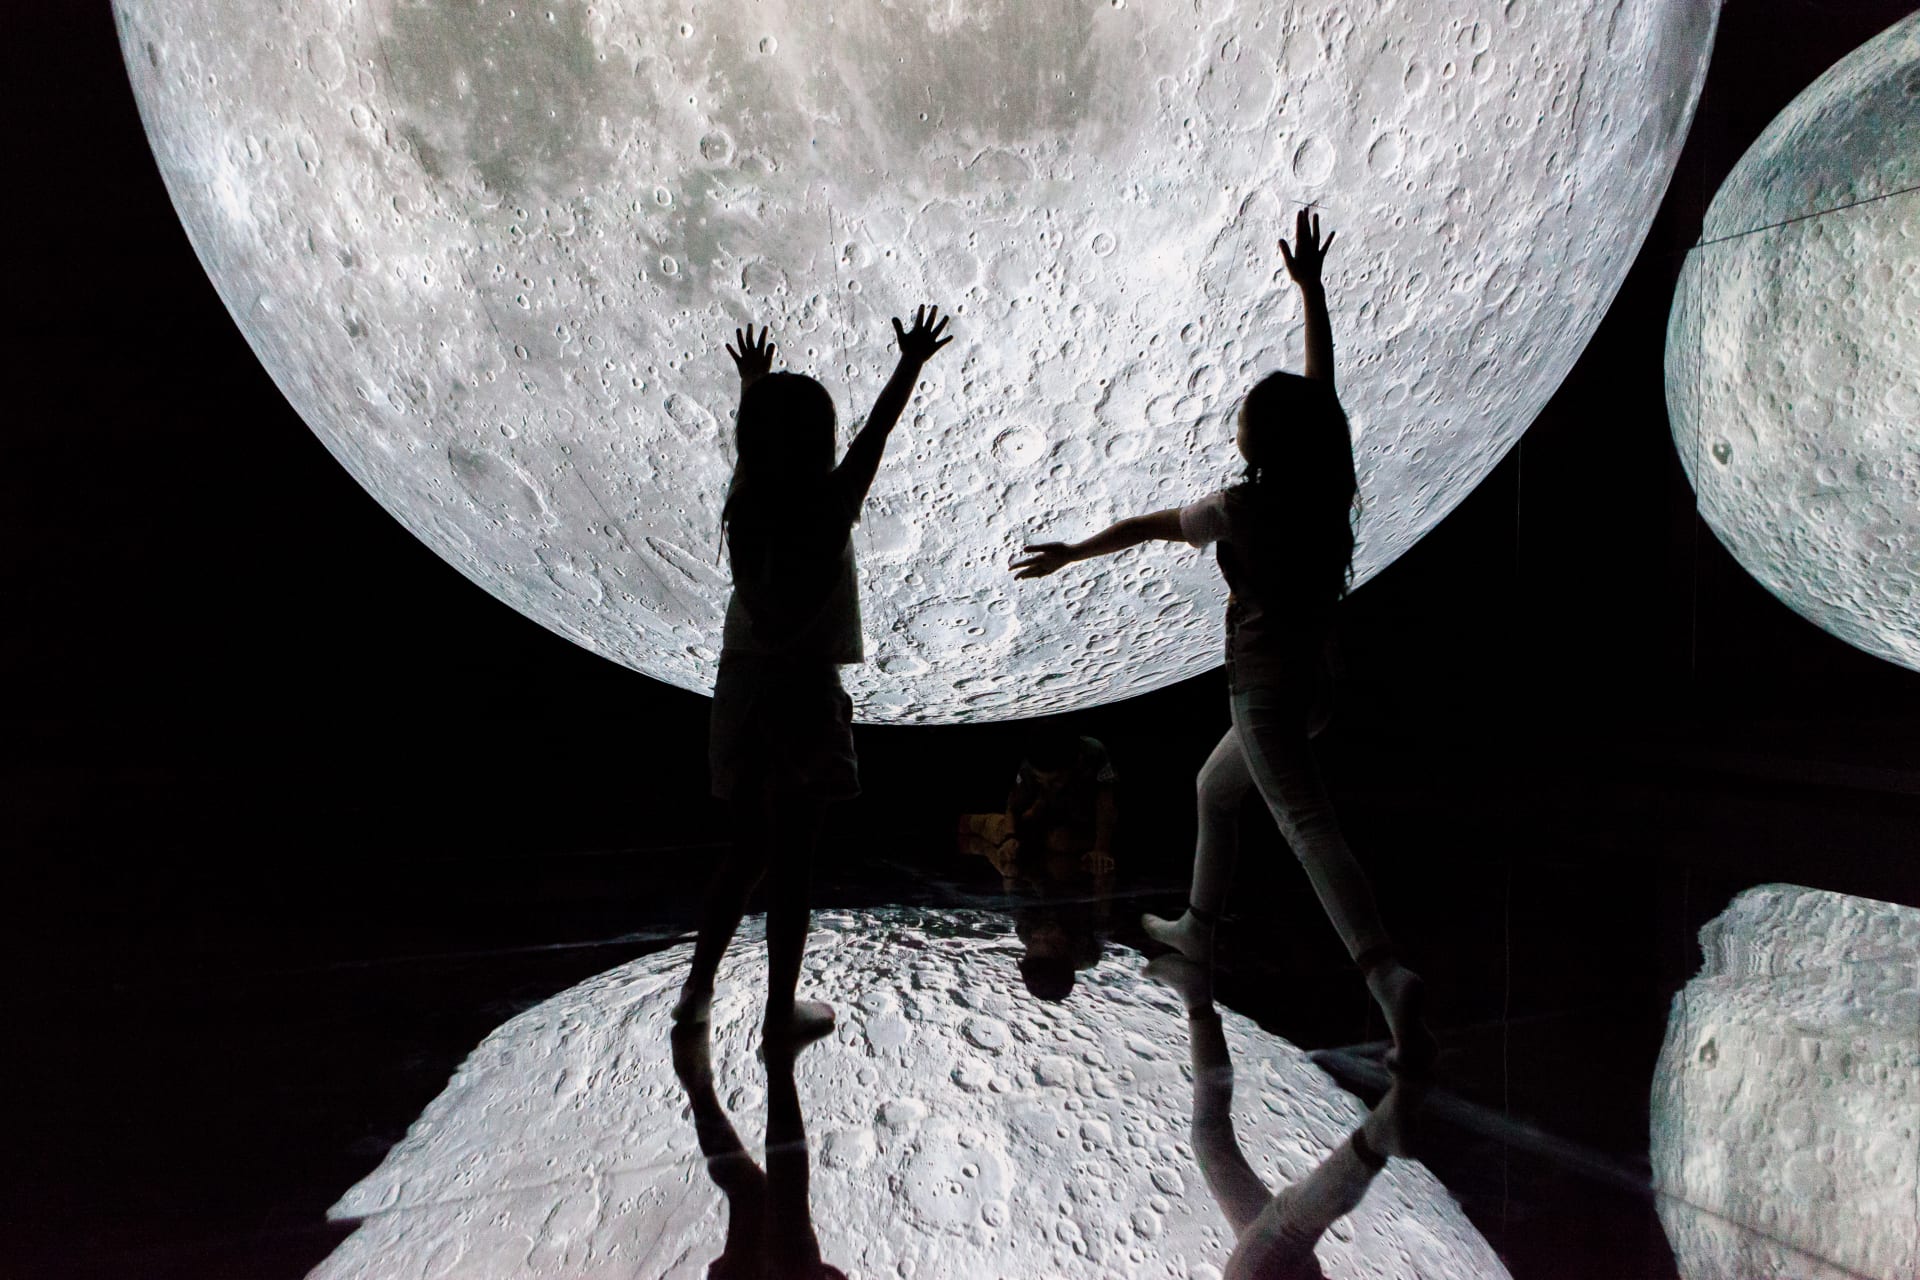 تجربة تبهر الحواس  صنعت بمساعدة "ناسا".. سيُشعرك هذا القمر الضخم في دبي أنك في رحلة إلى الفضاء 